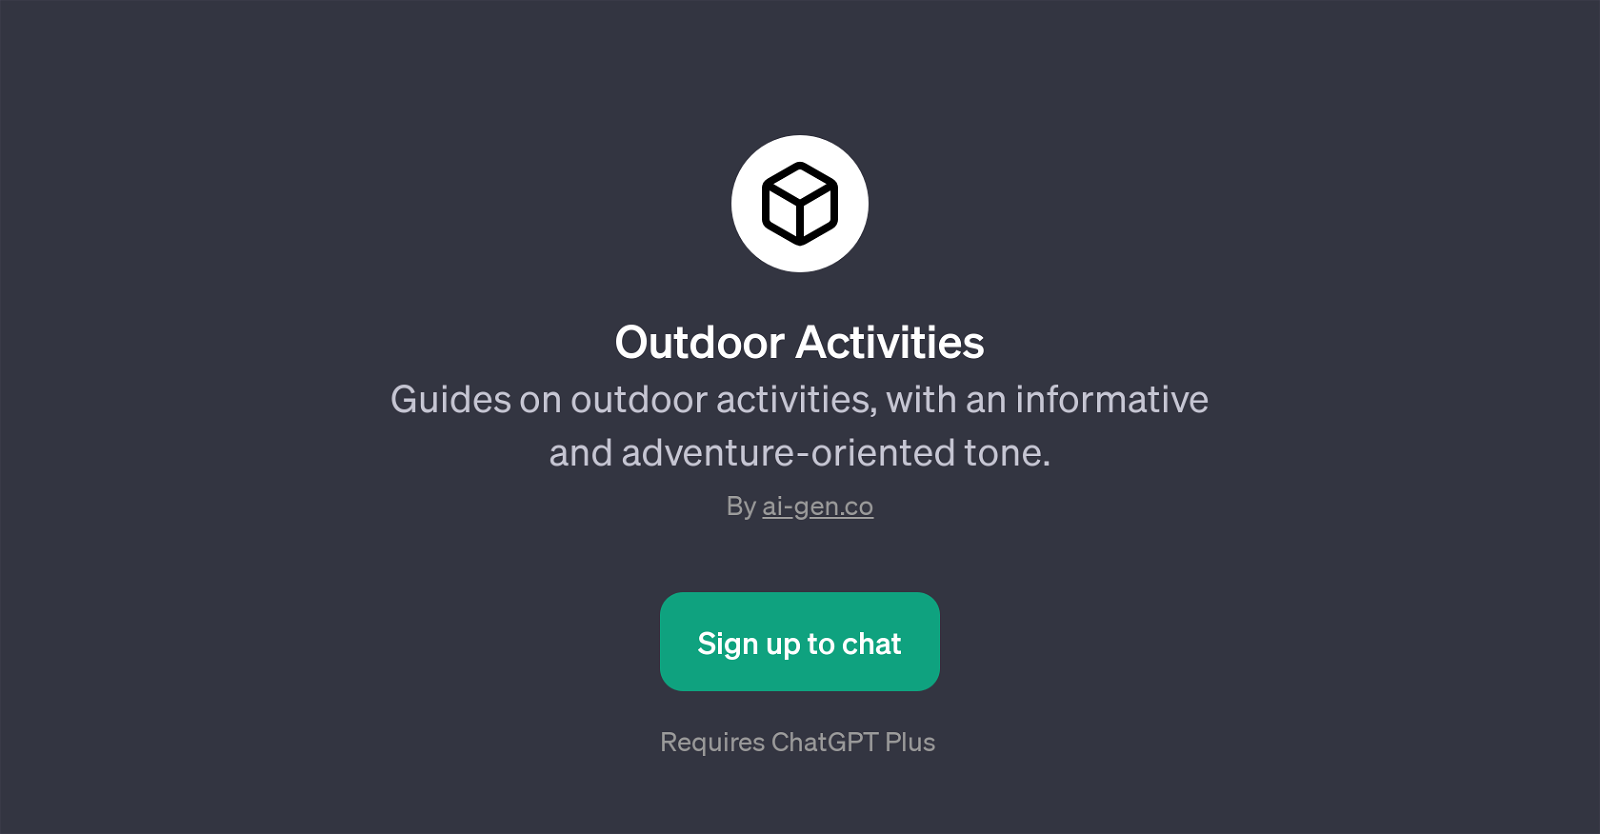 Outdoor Activities website